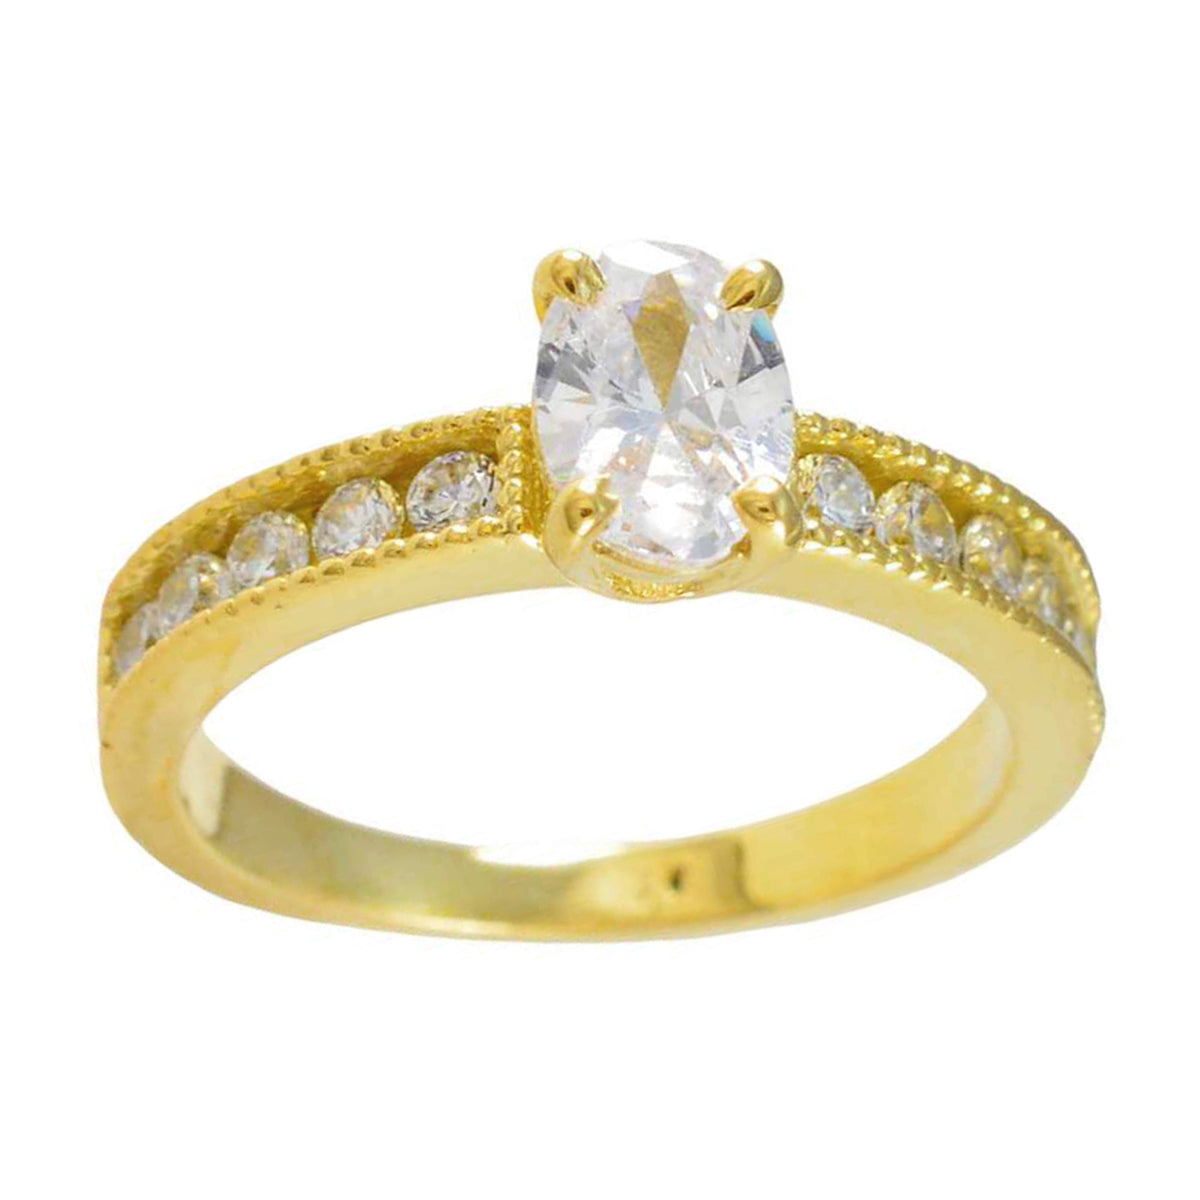 riyo количественное серебряное кольцо с покрытием из желтого золота, кольцо с зубцом овальной формы из белого камня cz